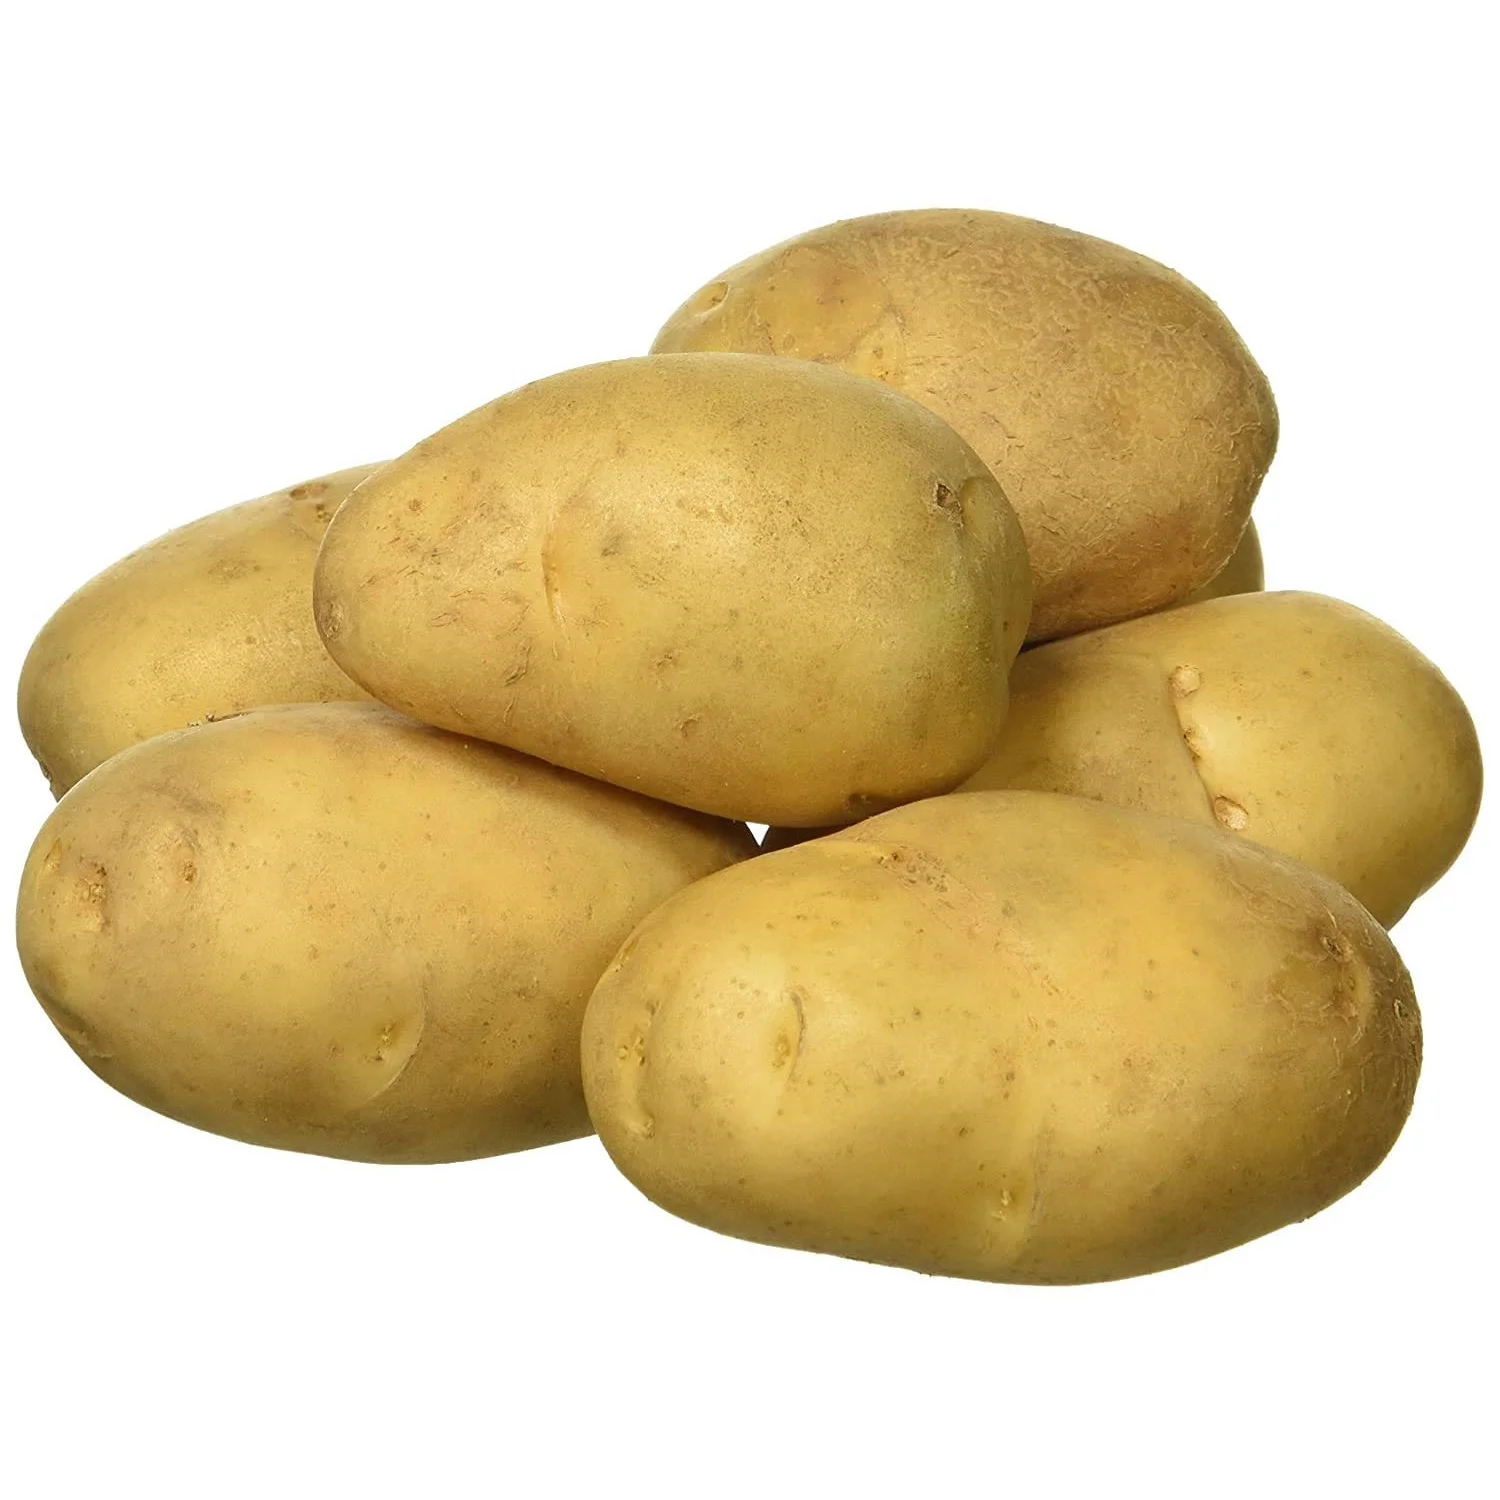 Недорогой 100% органический свежий картофель, гранильный картофель желтого цвета, картофель, овощи из бангладеш (10000001041067)